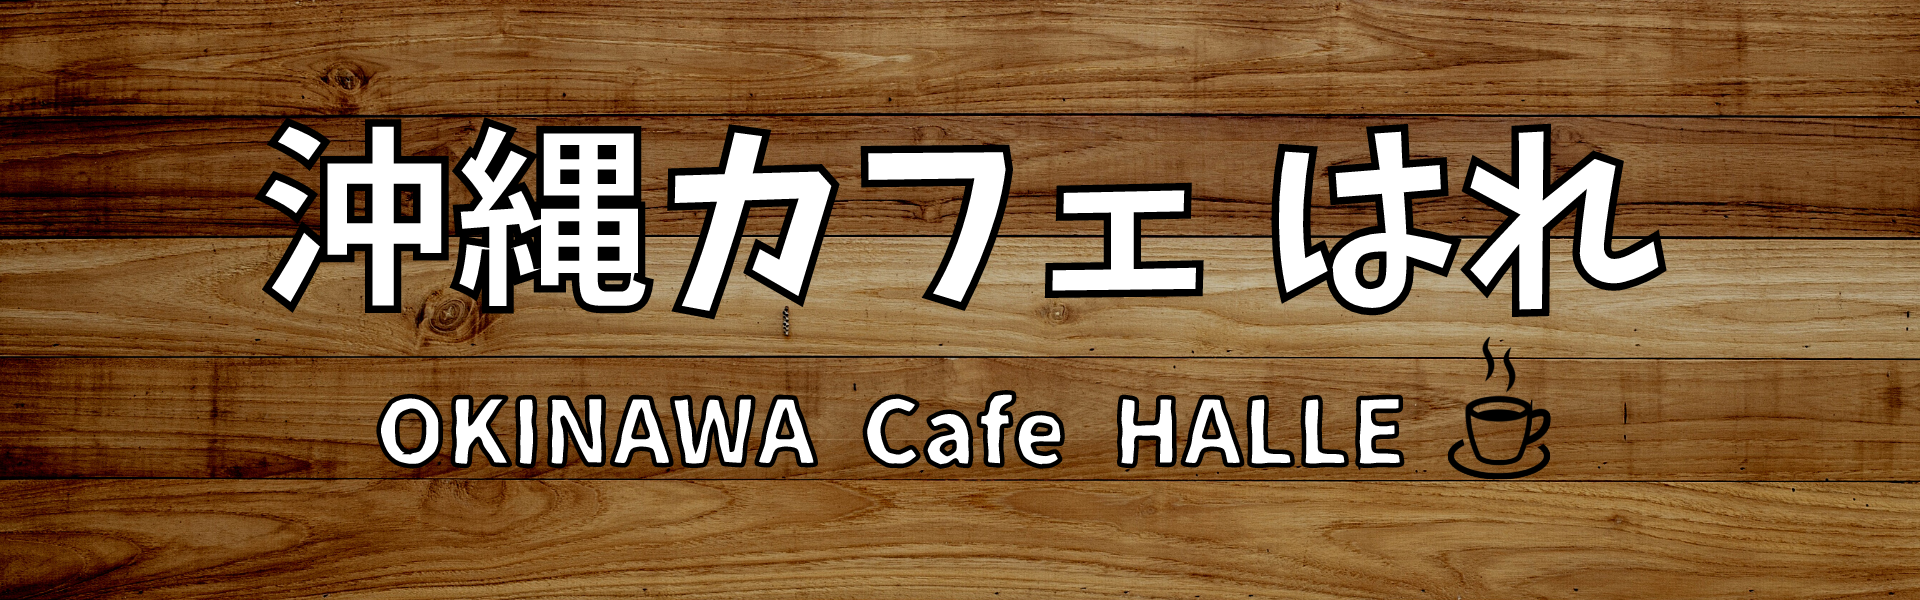 沖縄カフェ はれ